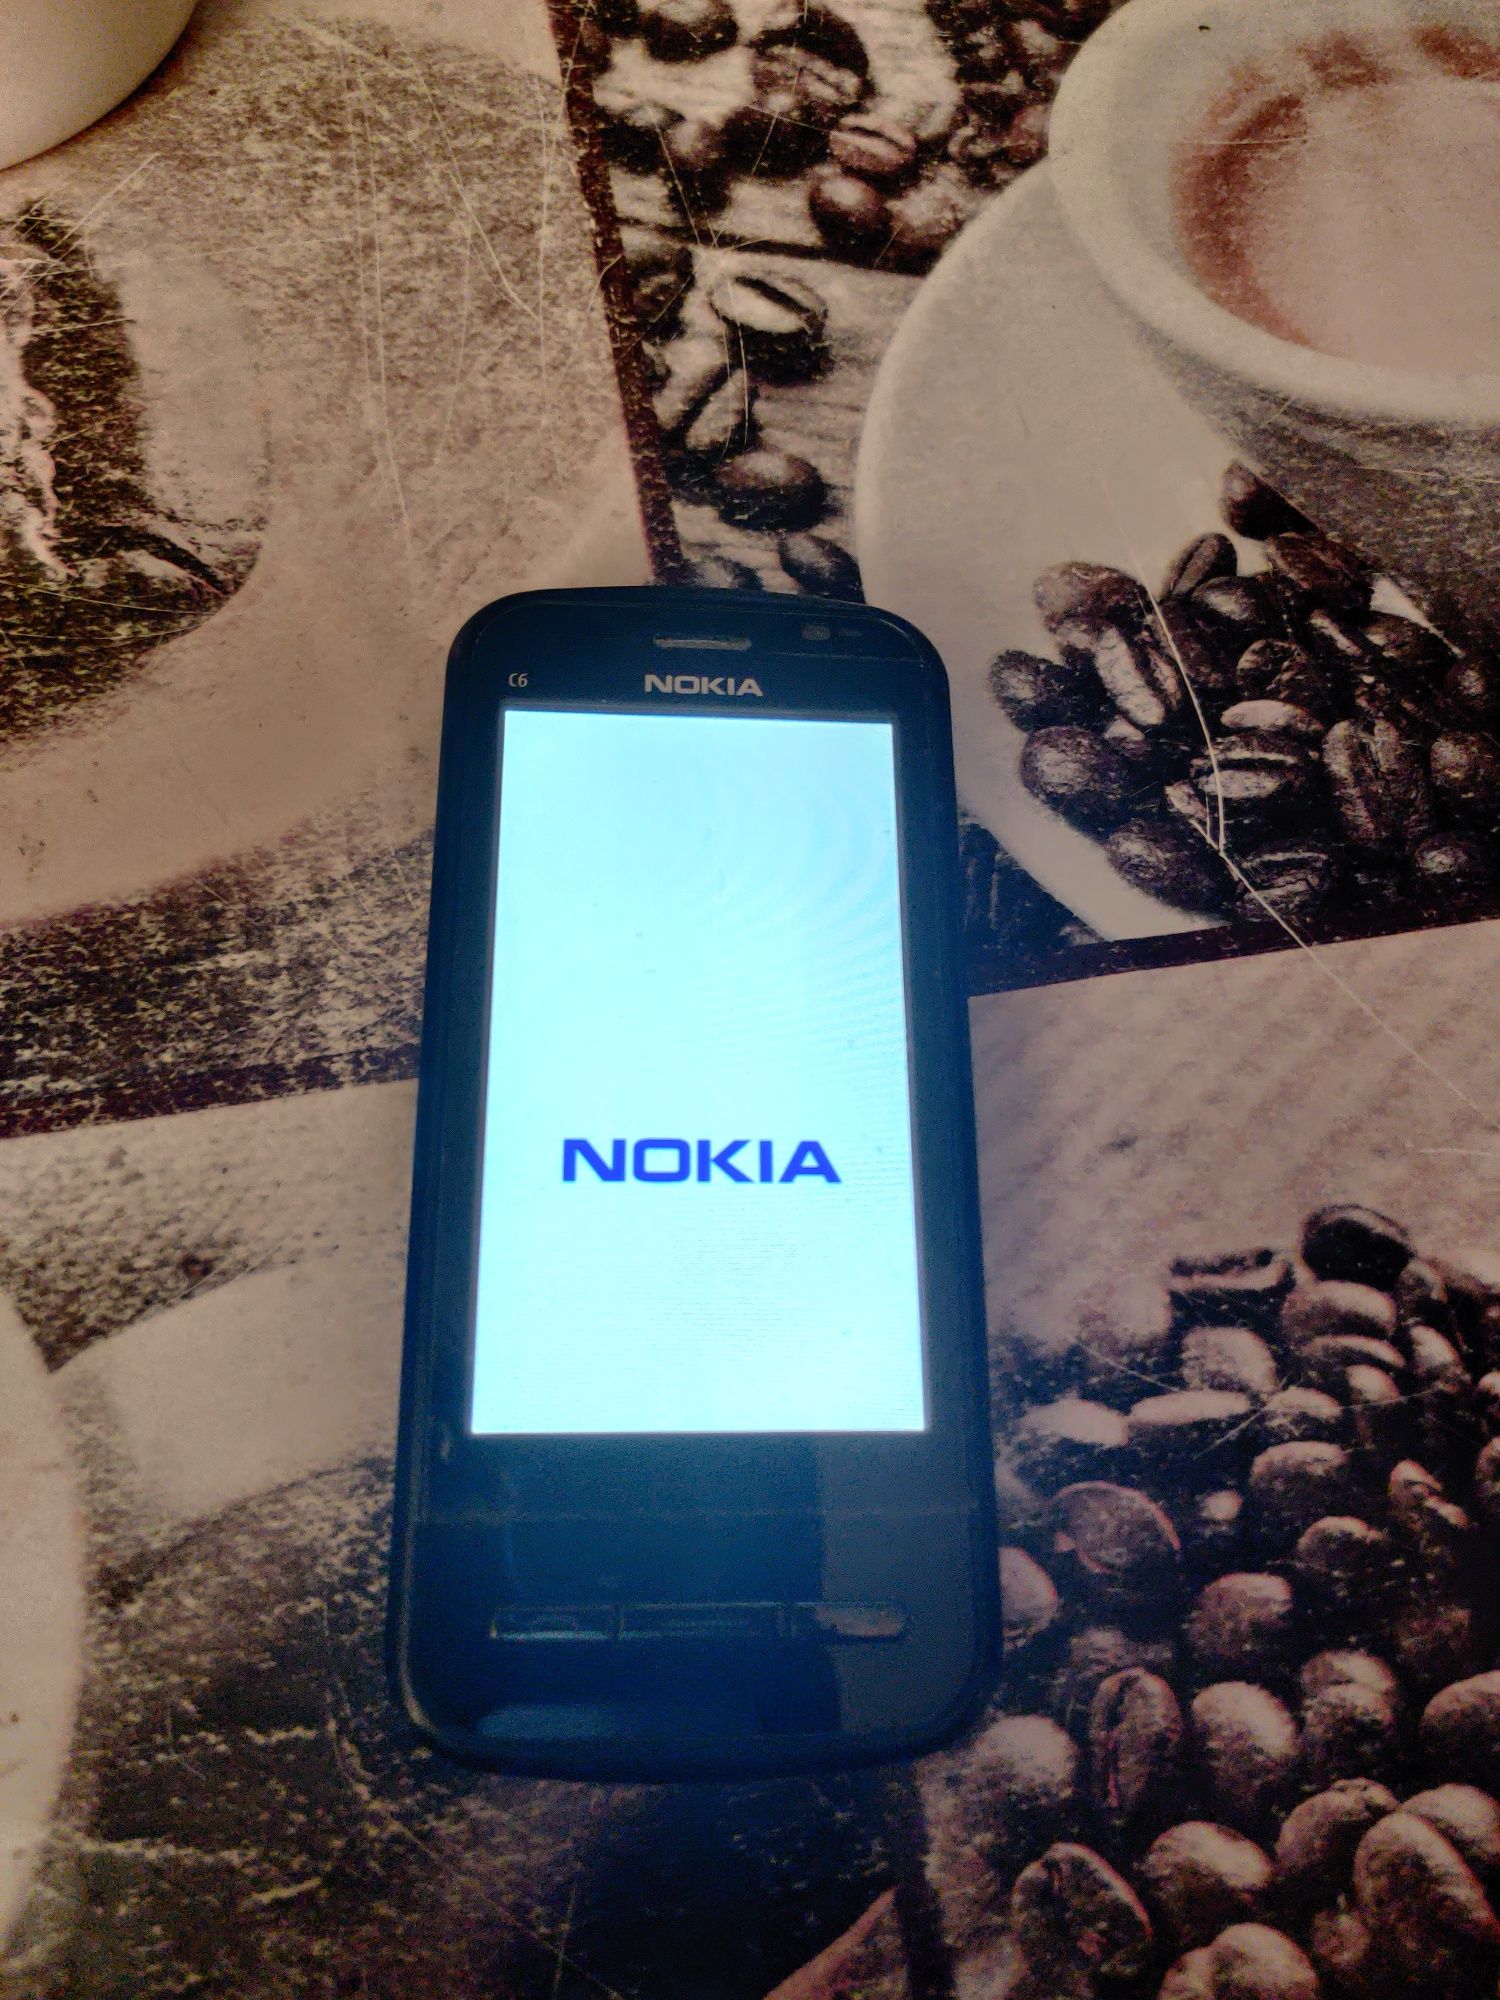 Nokia C6 00 remember